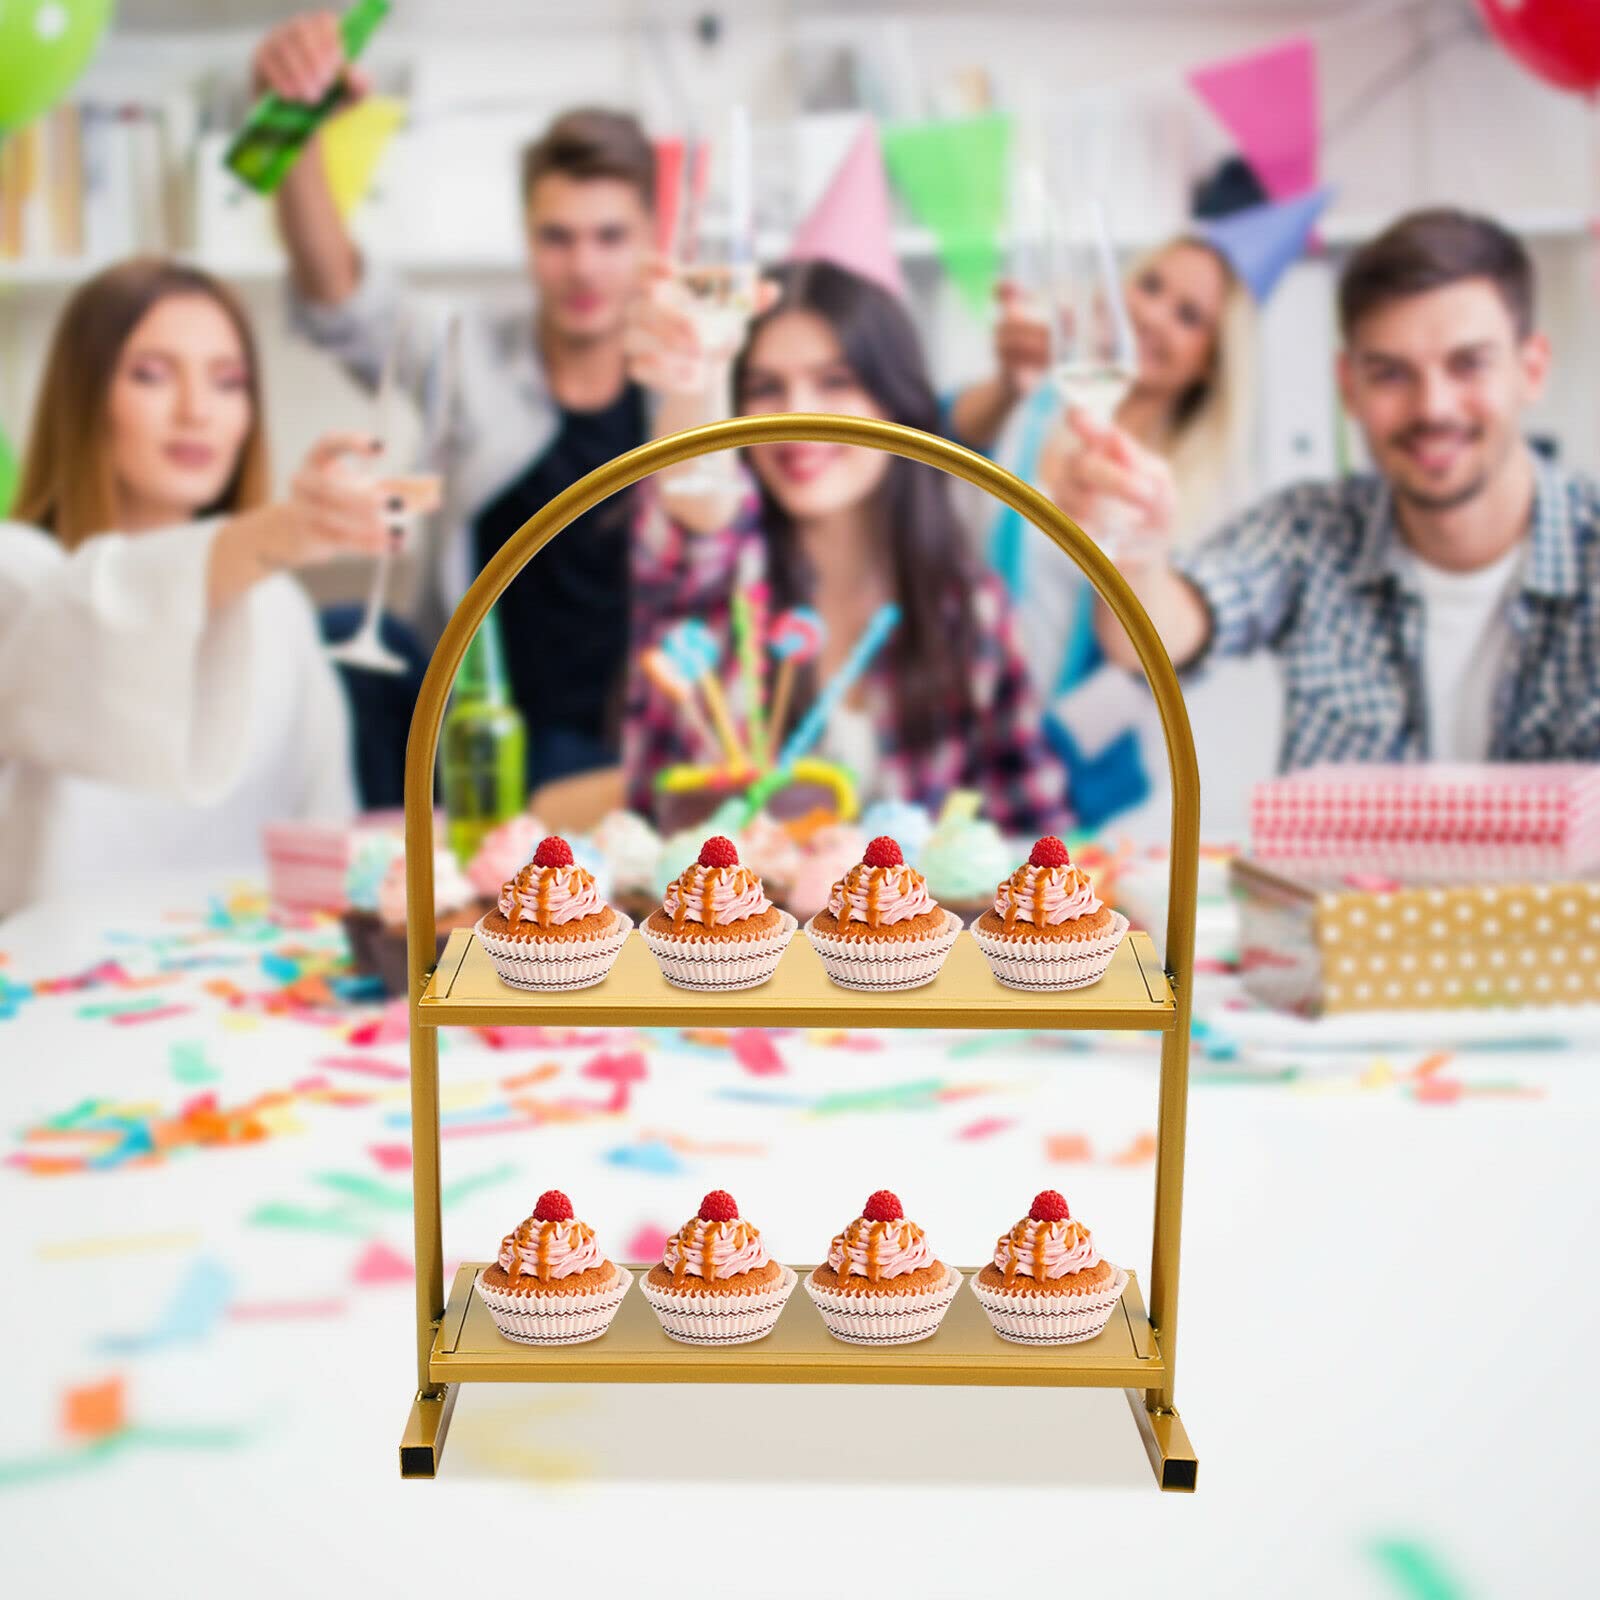 2 Ebenen Metall Cupcake-Ständer Hochzeitsbogen Dessert Kuchen Dessertständer Ausstellungsstand Tortenständ 